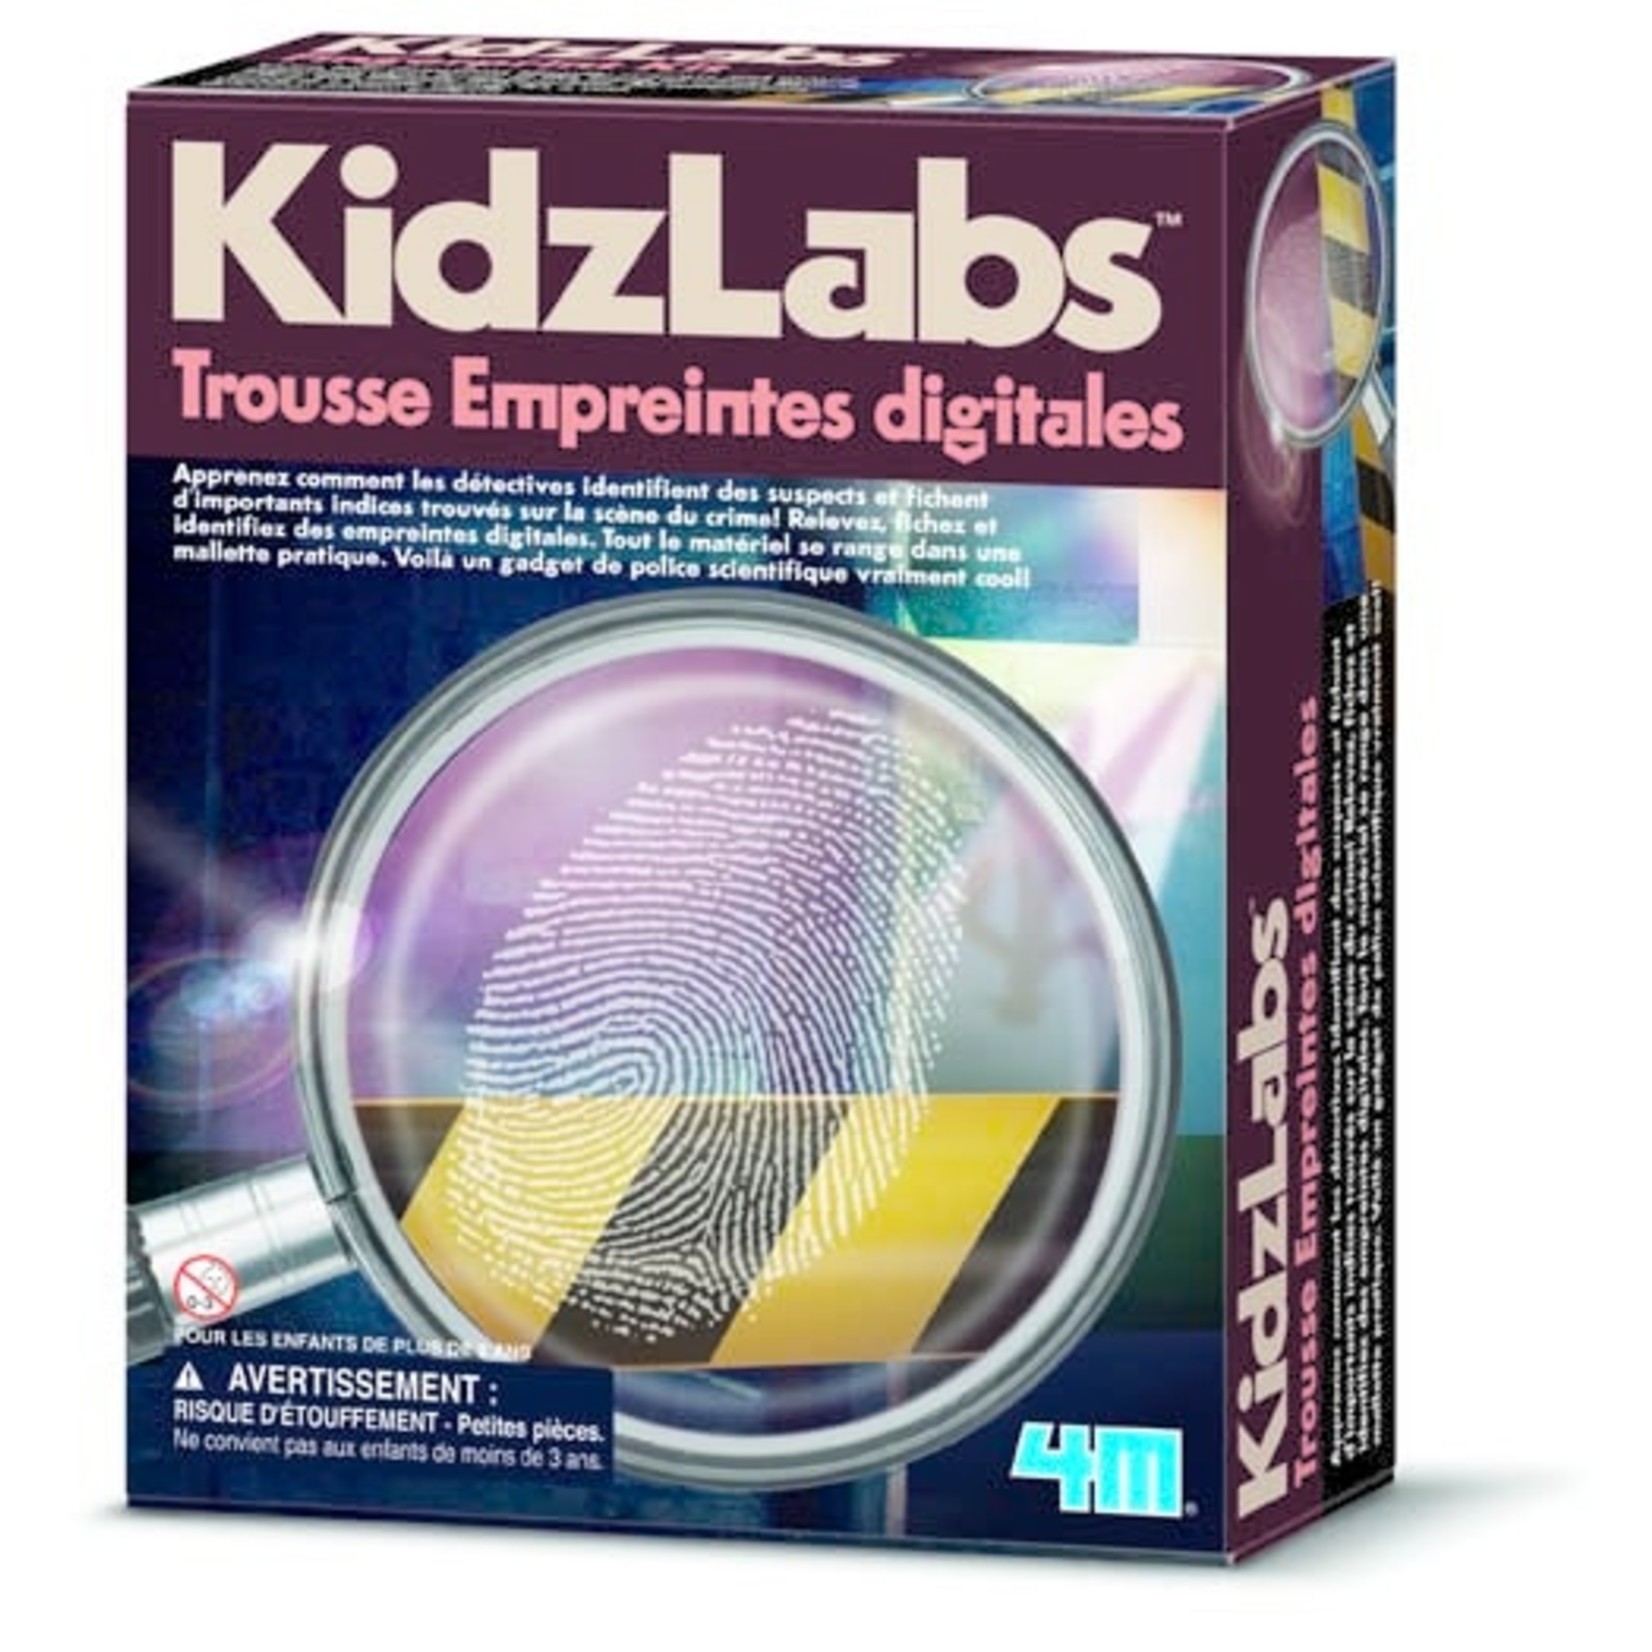 KidzLabs Fingerprinting Kit